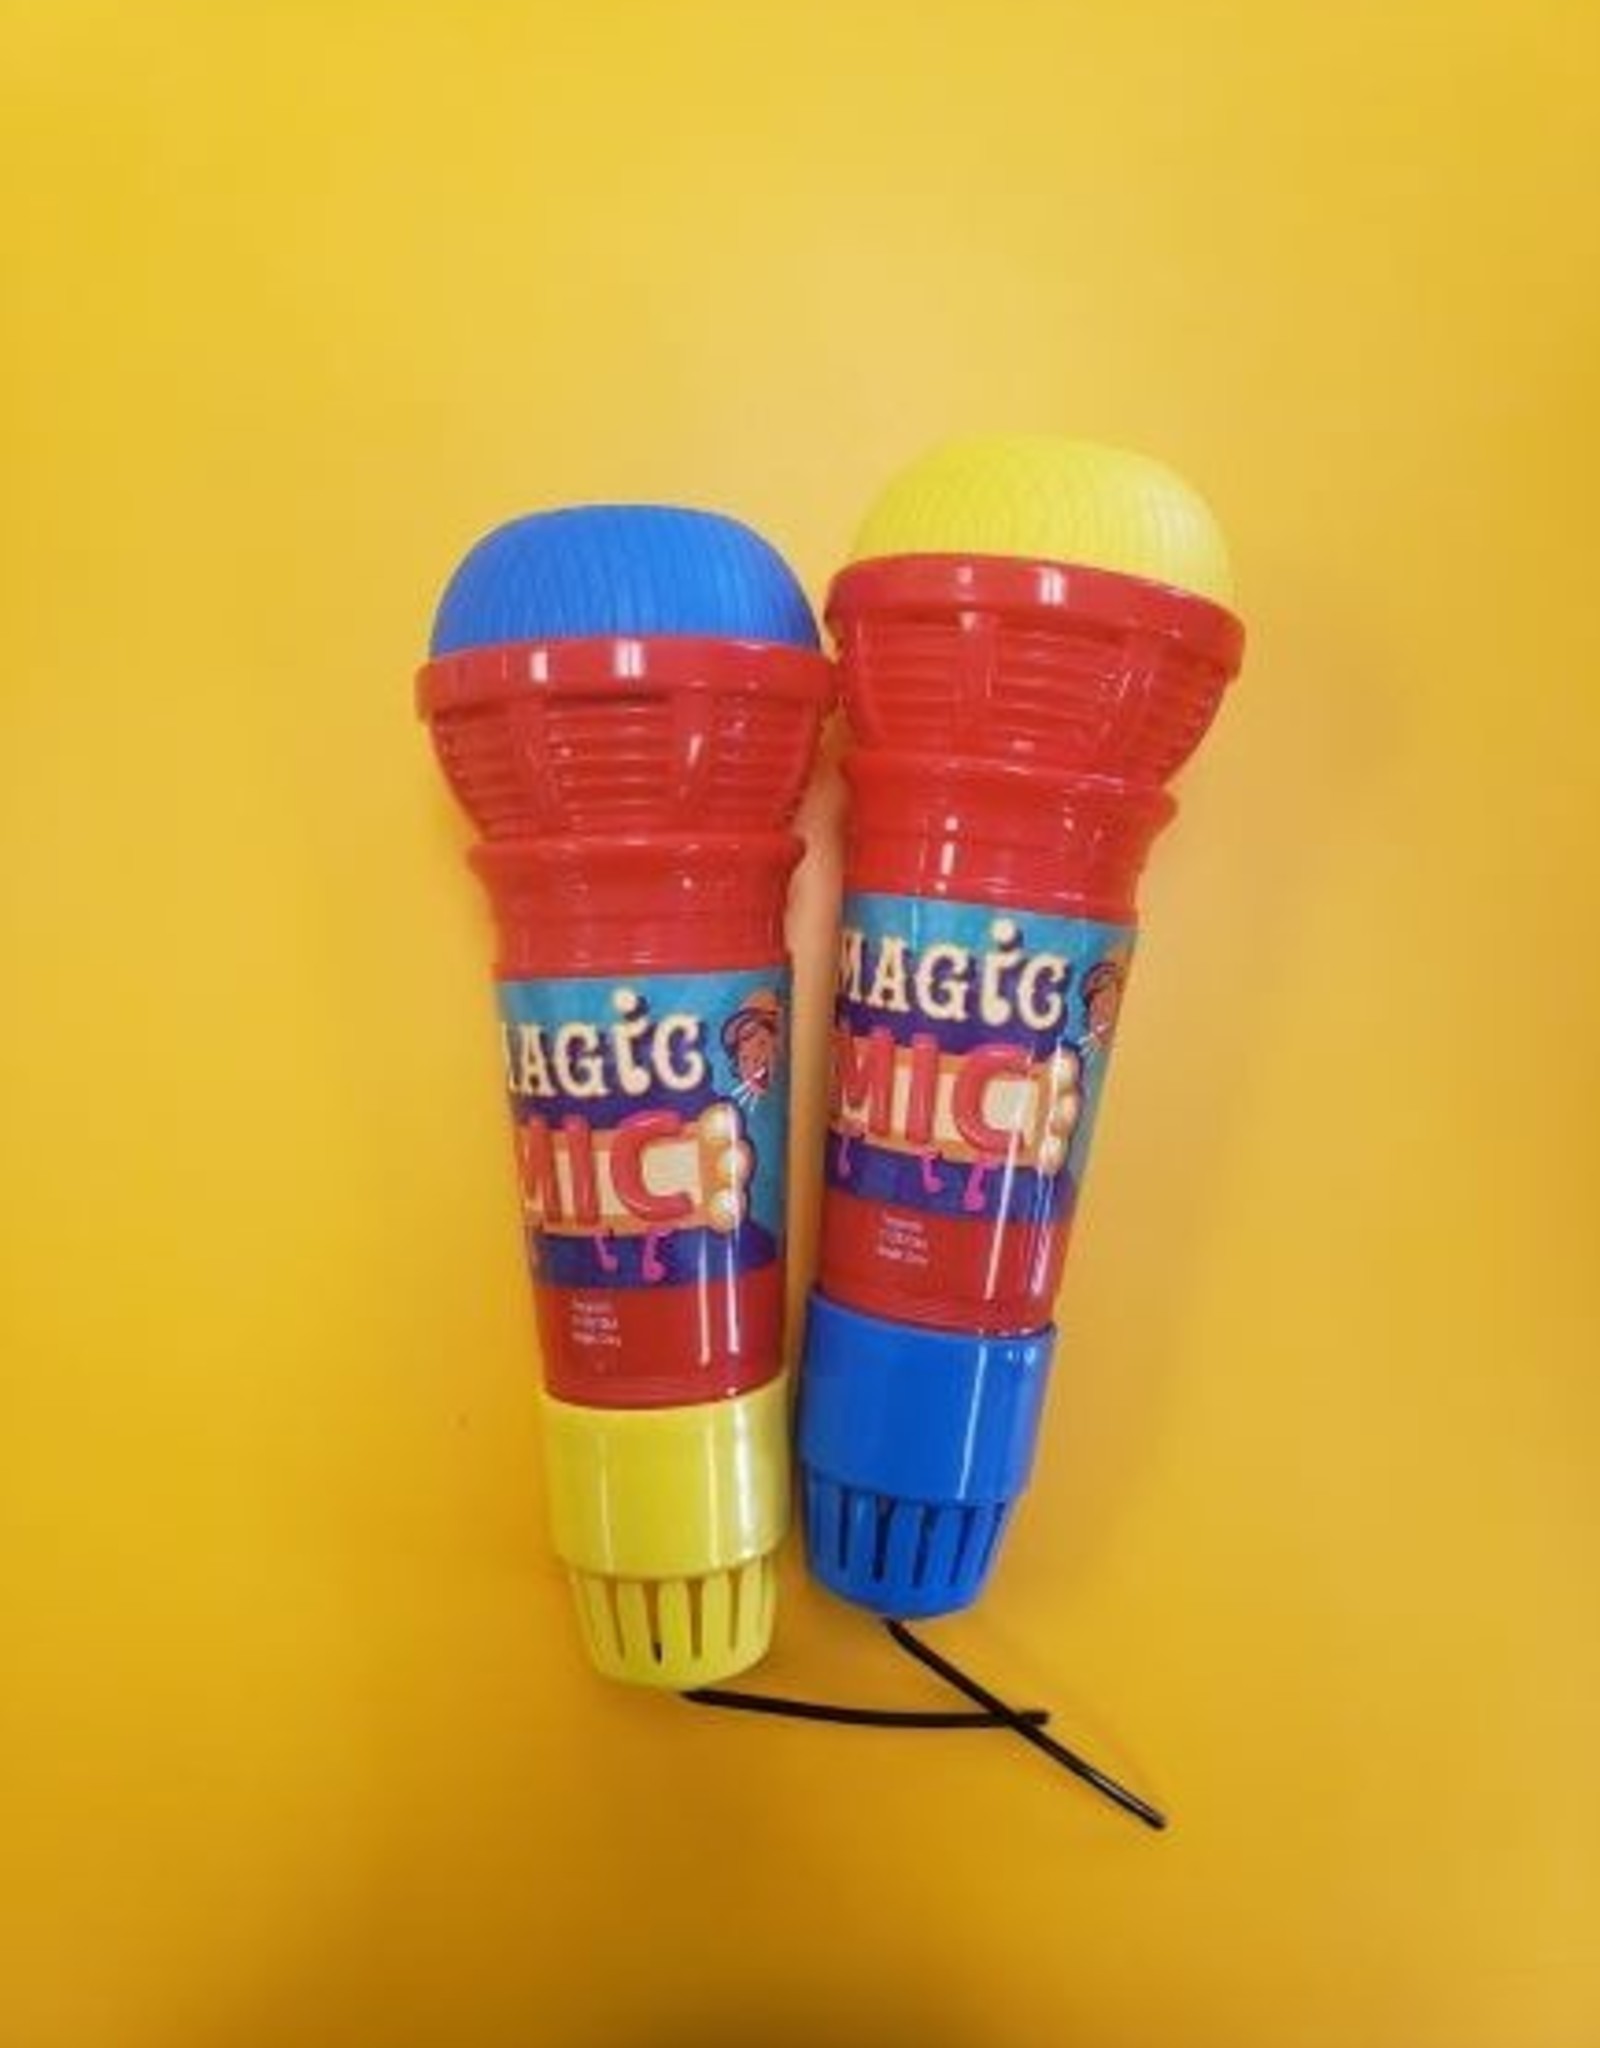 Mic magic. Magic Mic. Мэджик МИЦ. Magic micser игрушка.